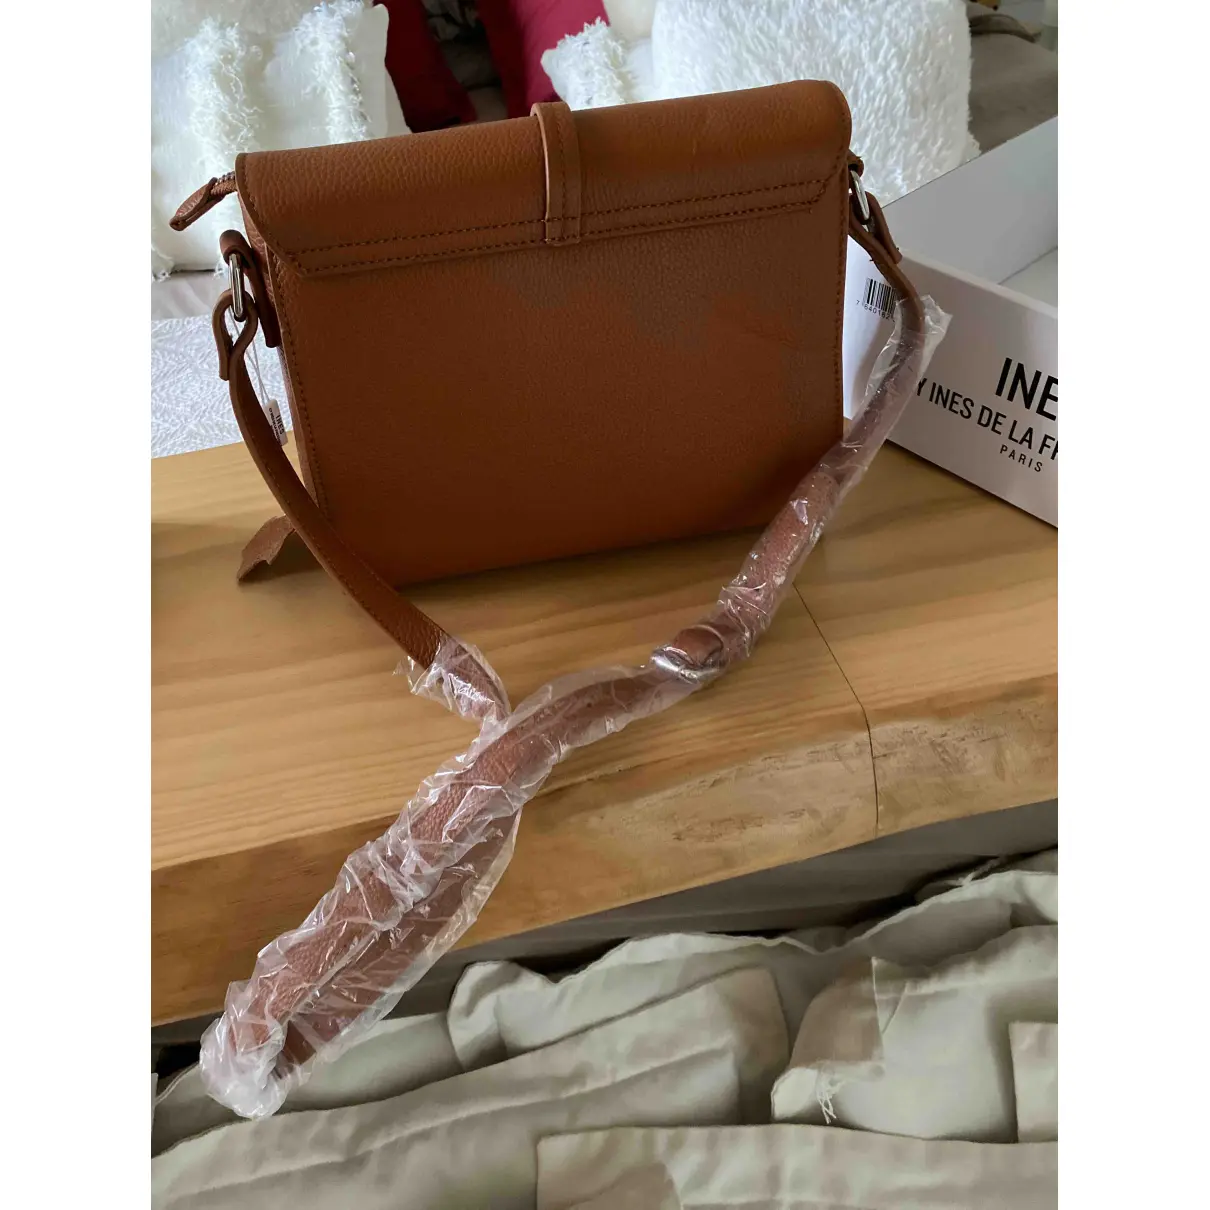 Buy Inès De La Fressange Paris Leather crossbody bag online